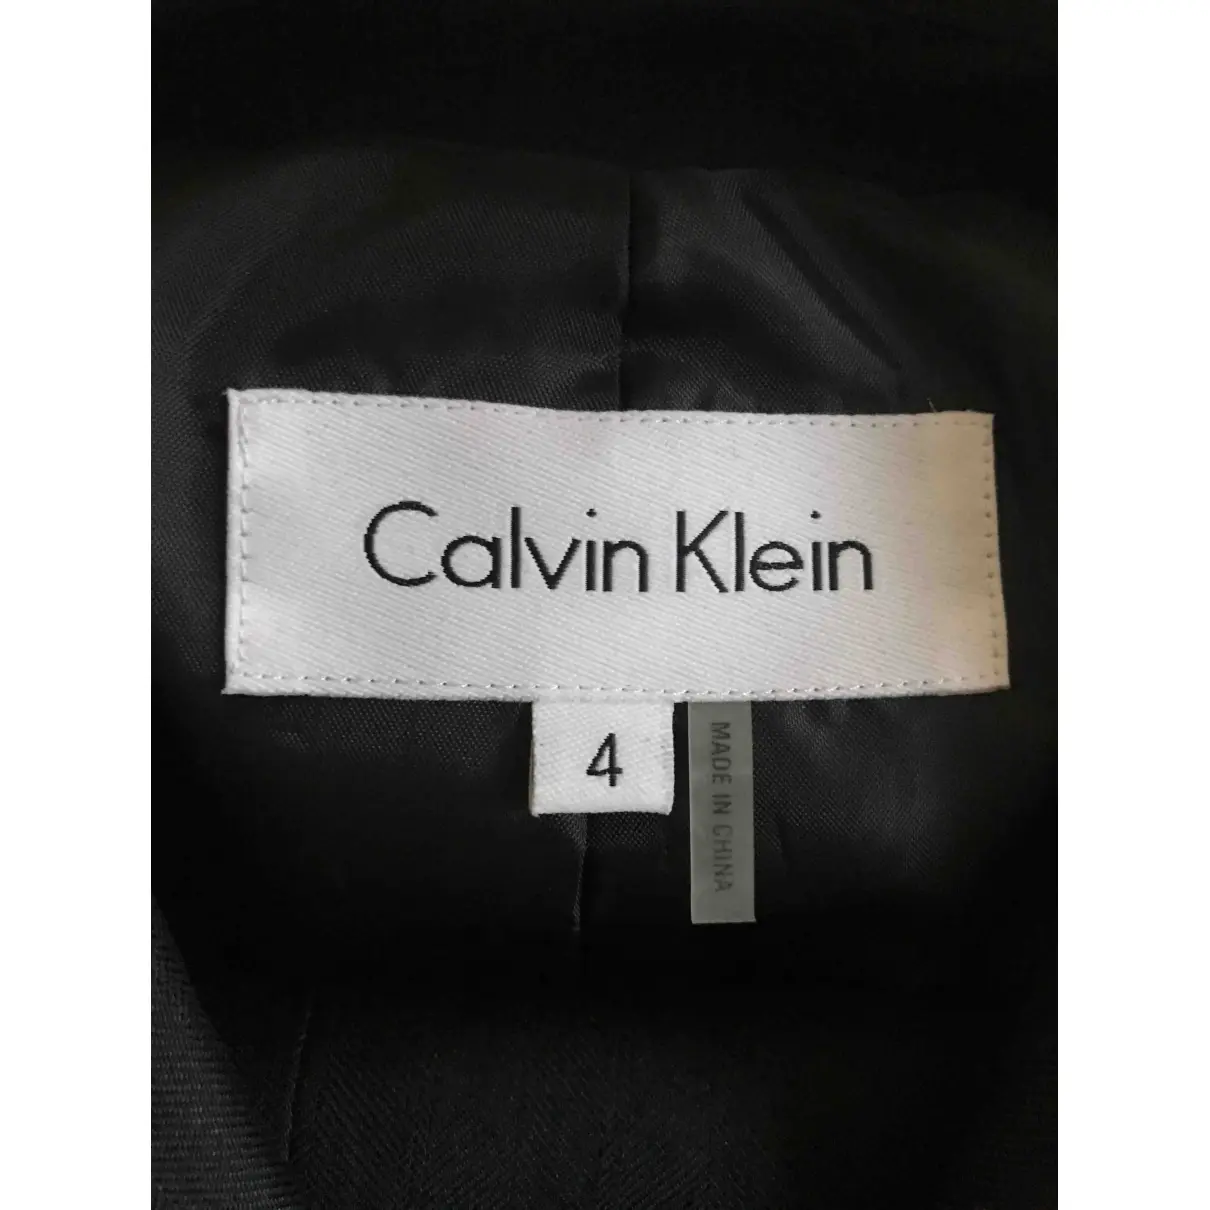 Buy Calvin Klein Suit jacket online